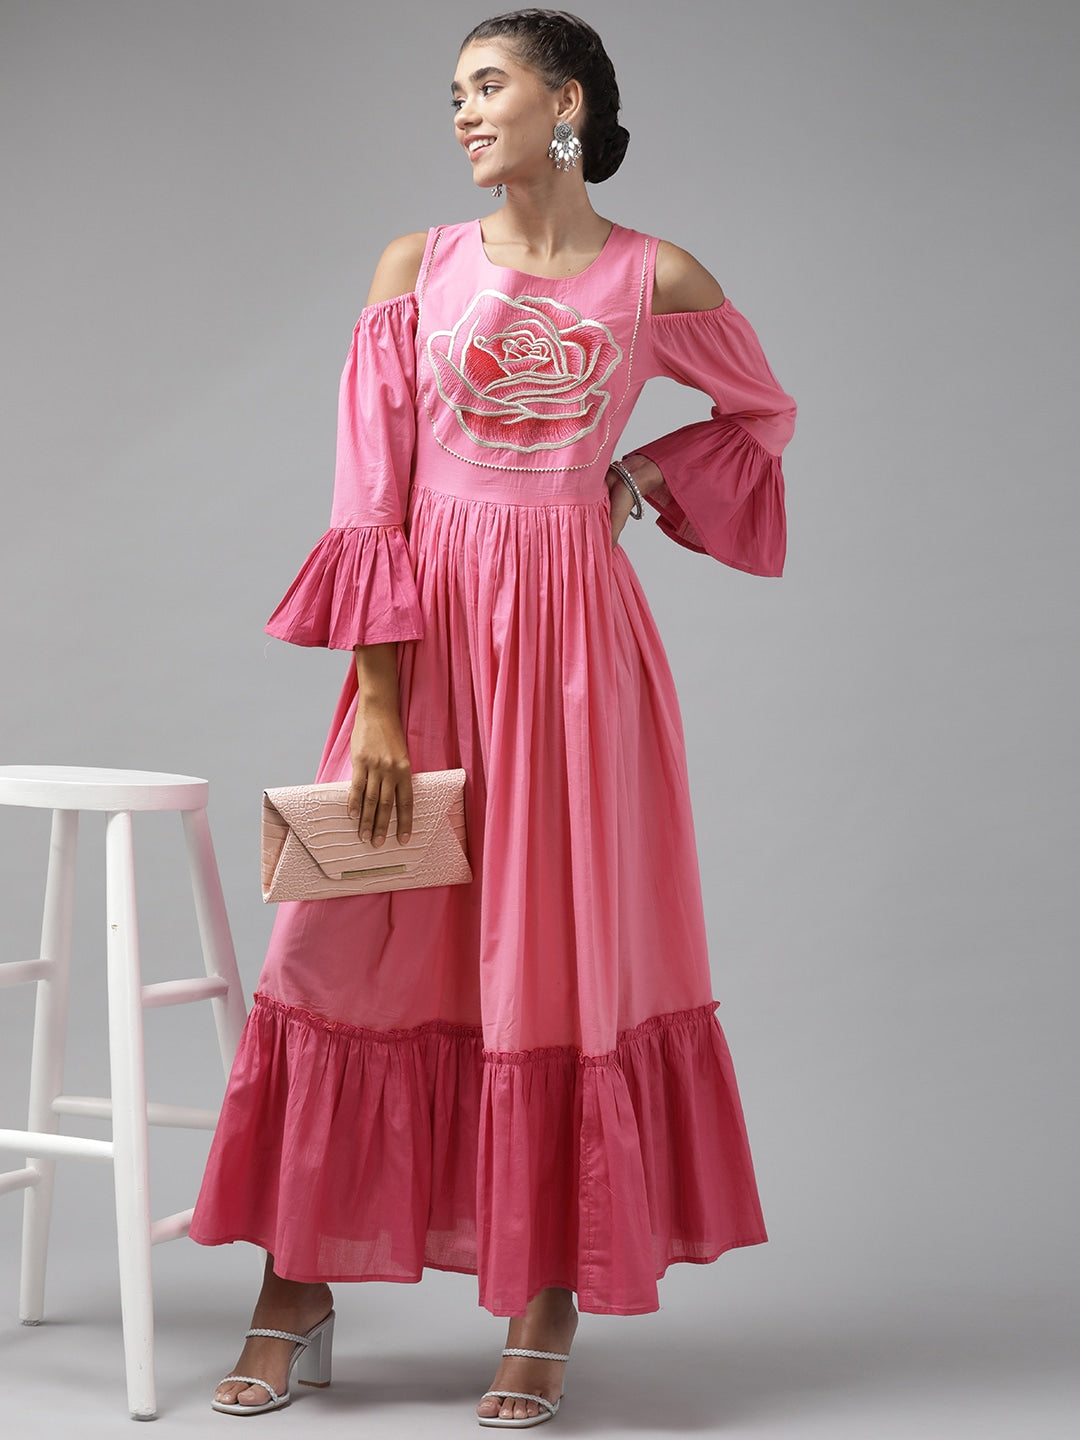 Yufta Pink Ethnic Maxi Dress Yufta Store